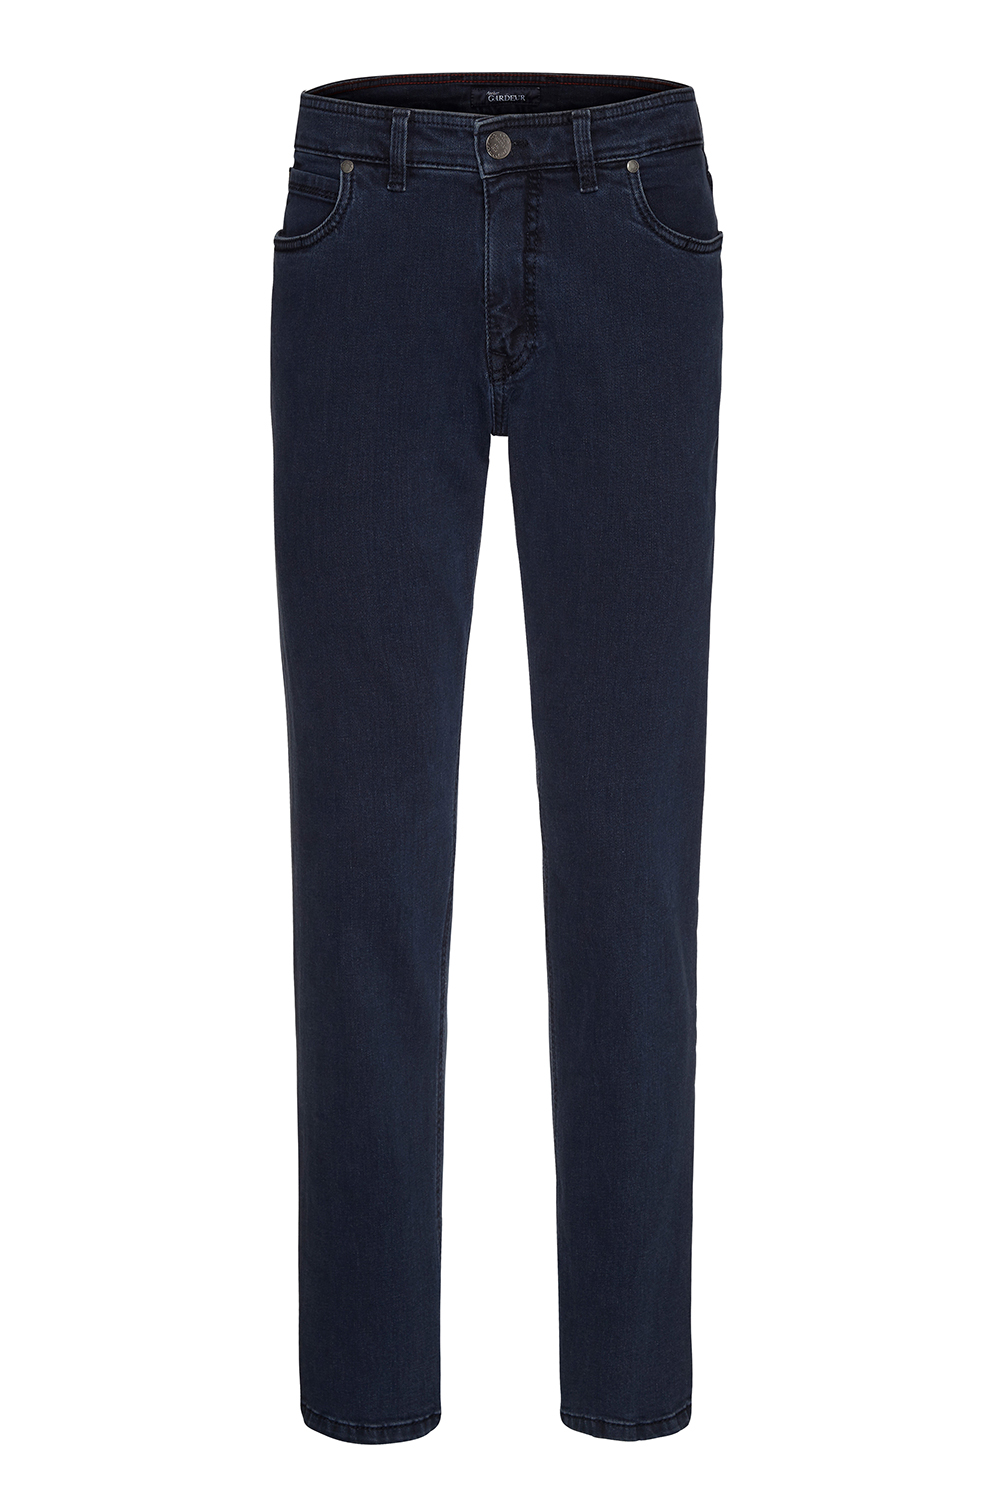 Gardeur - Batu-2 Modern Fit 5-Pocket Jeans Clean Blue - 36/36 - Heren